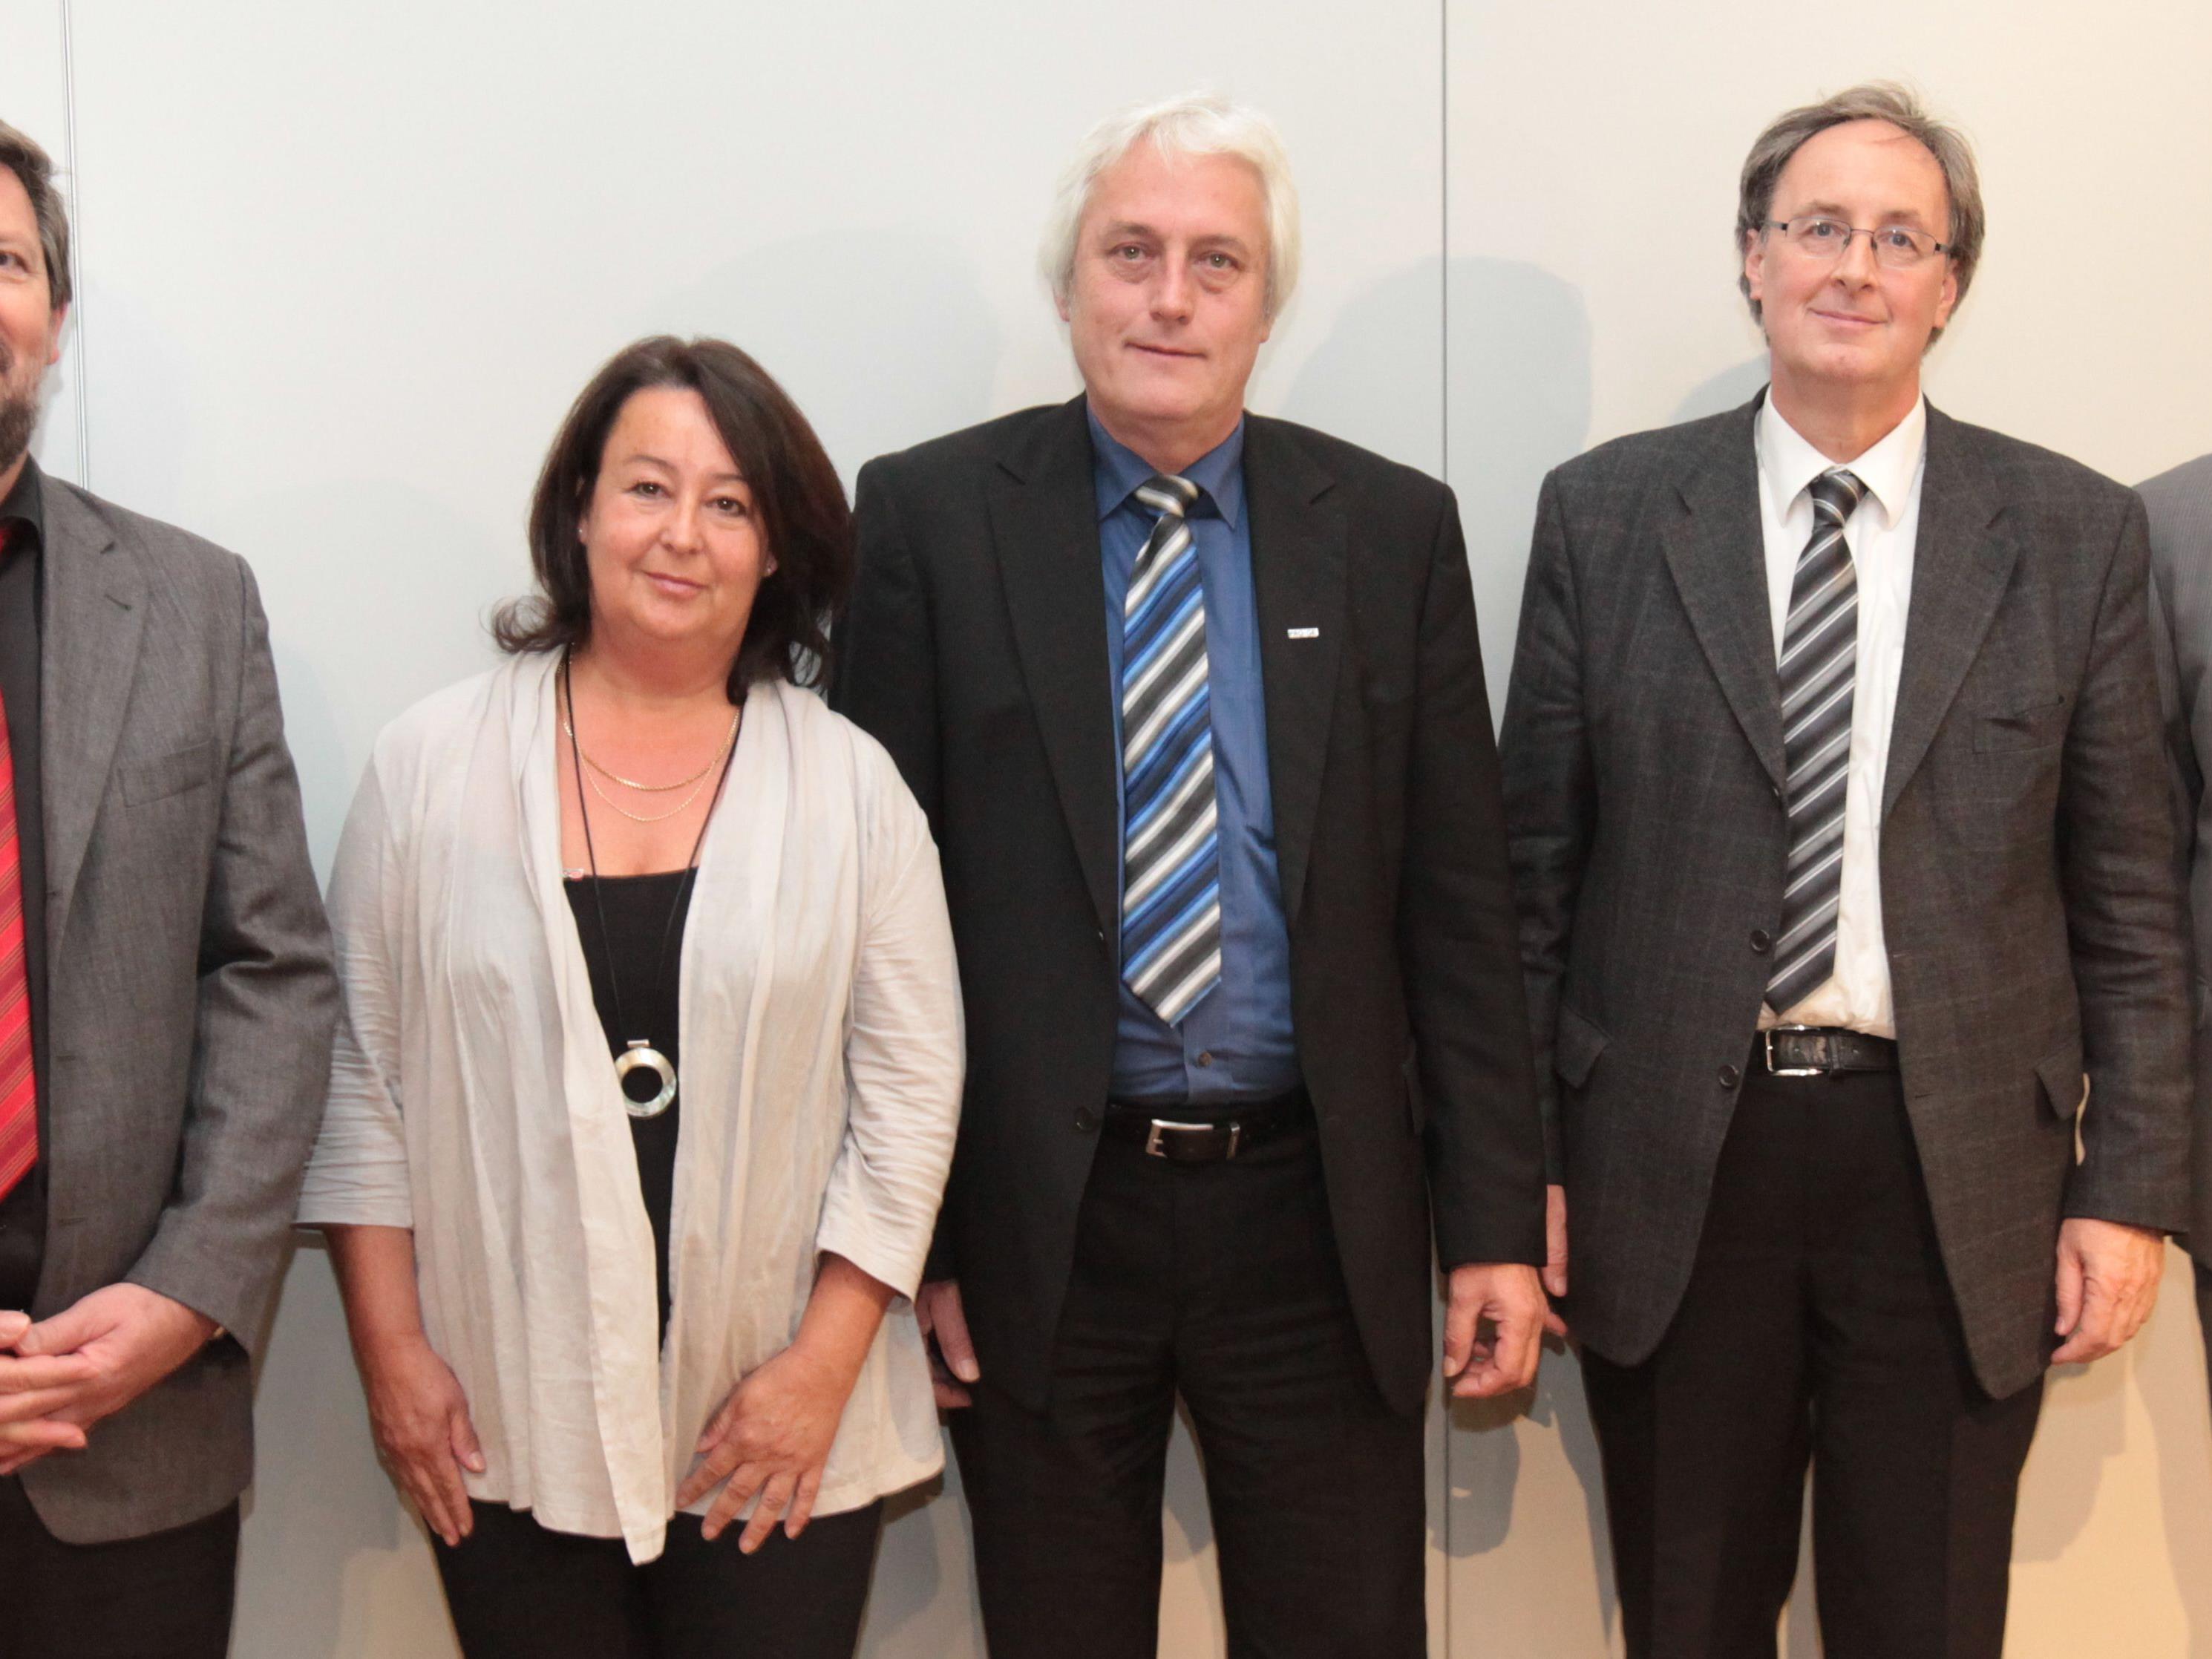 Norbert Loacker mit den stellvertretenden Landesvorsitzenden Reinold Diem (GPA-DJP), Eugen Lampert (GÖD), Werner Posch (GPA-djp) und Carmen Reiter (GdG-KMSFB).